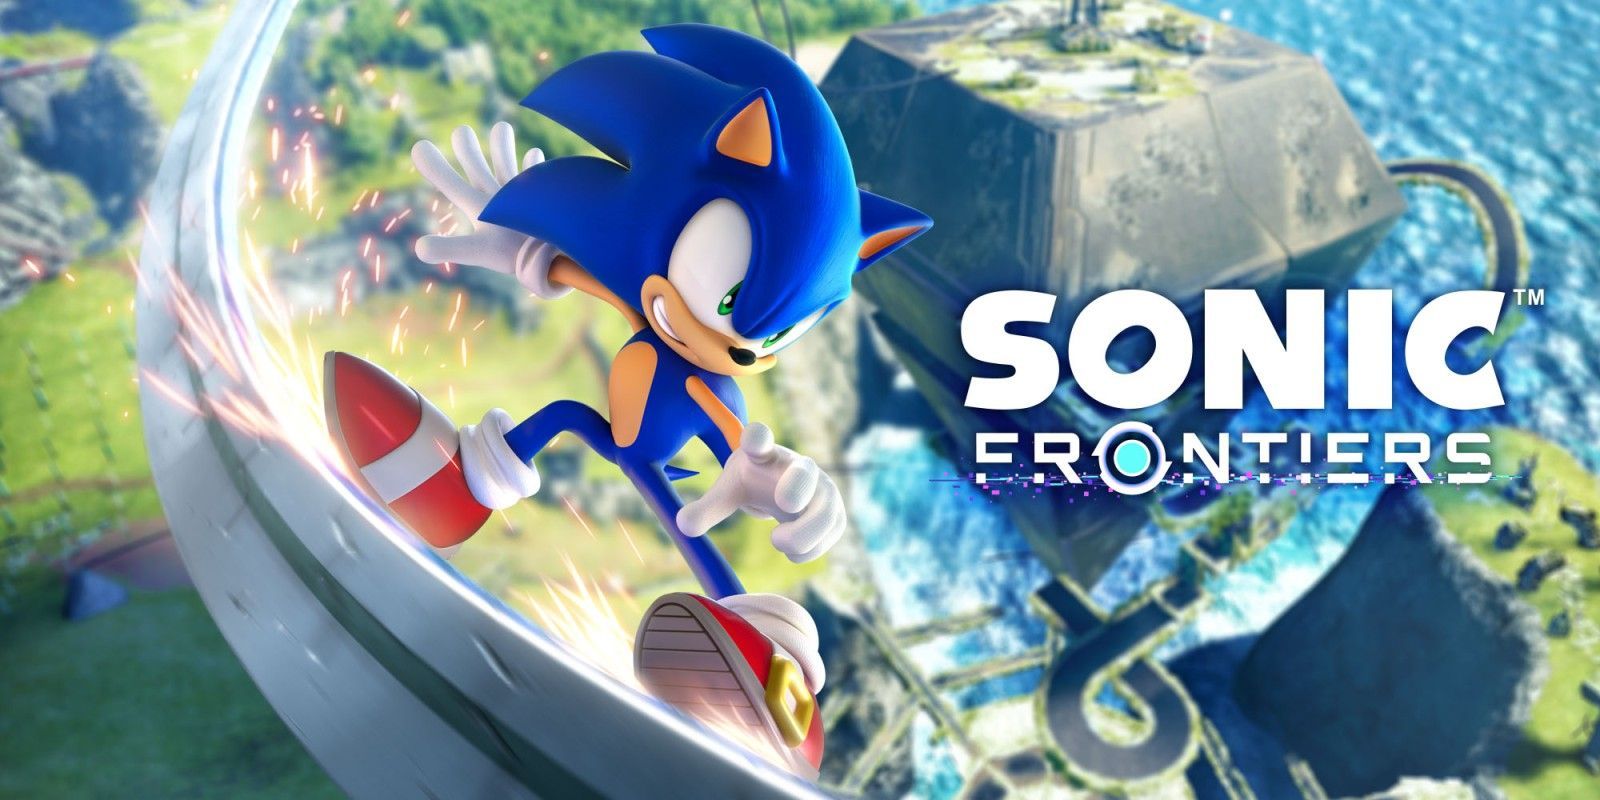 Sonic Frontiers - La mise à jour Horizon Final débarque bientôt avec de nouvelles musiques - GEEKNPLAY Home, News, Nintendo Switch, PC, PlayStation 4, PlayStation 5, Xbox One, Xbox Series X|S